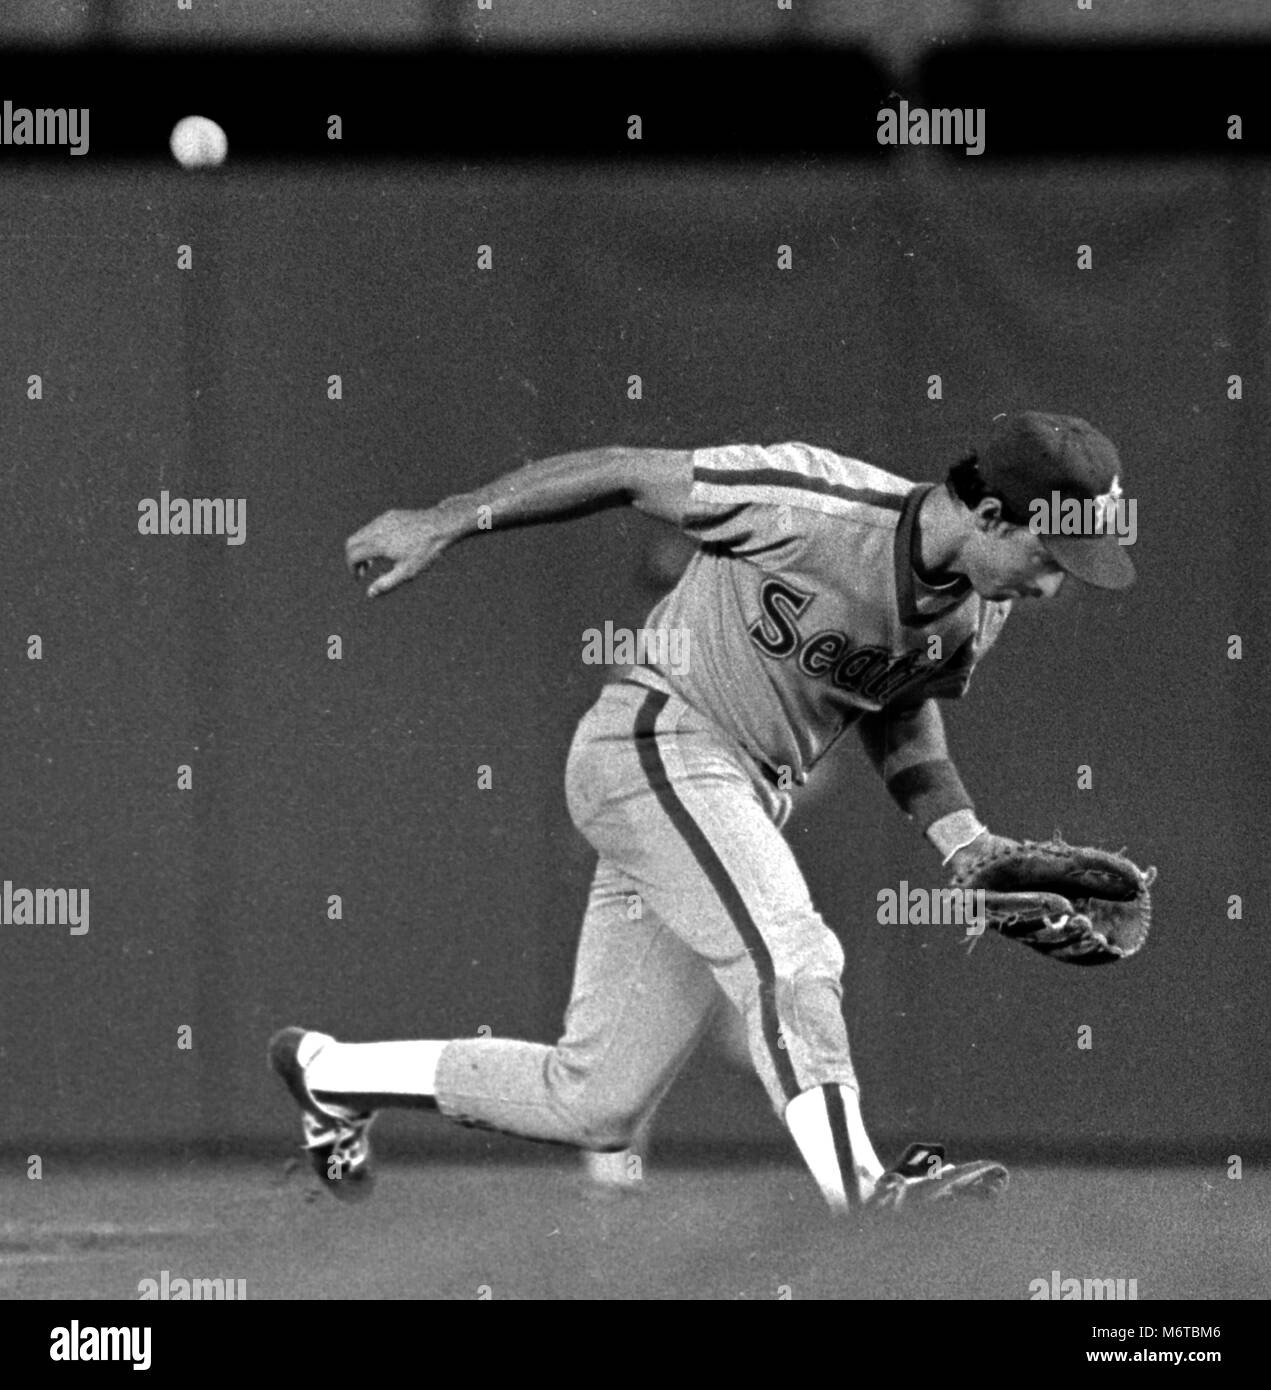 Seattle Mariners Perconte Jack guarda per la sfera che rimbalzare nella direzione opposta durante un gioco aginst i Rangers di Texas ad Arlington Stadium di Arlington Tx USA 1985 foto di bill belknap Foto Stock